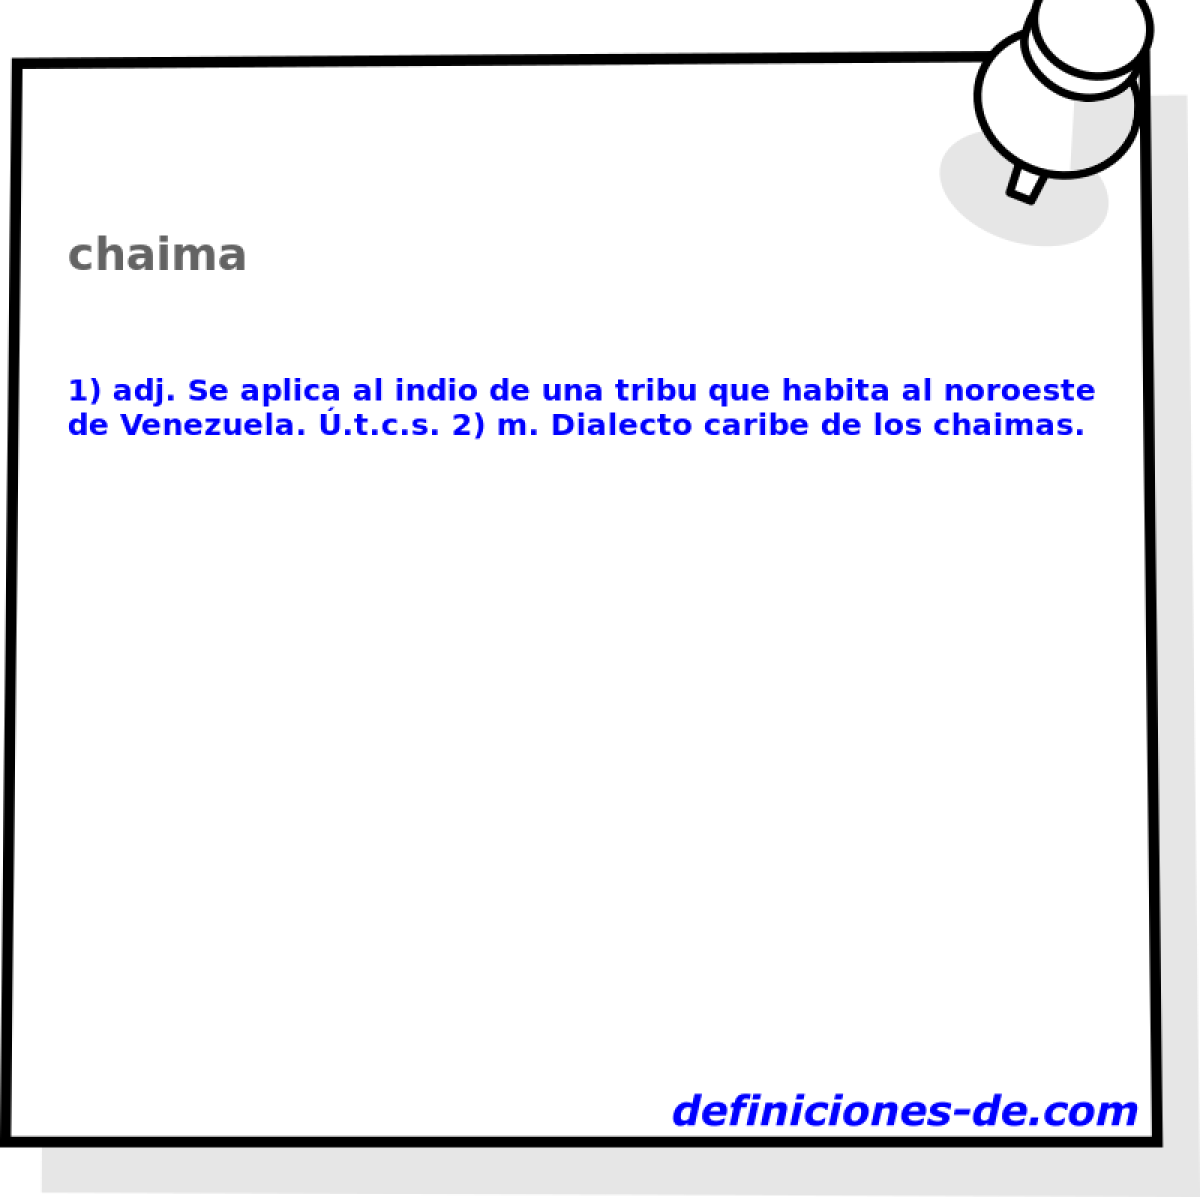 chaima 